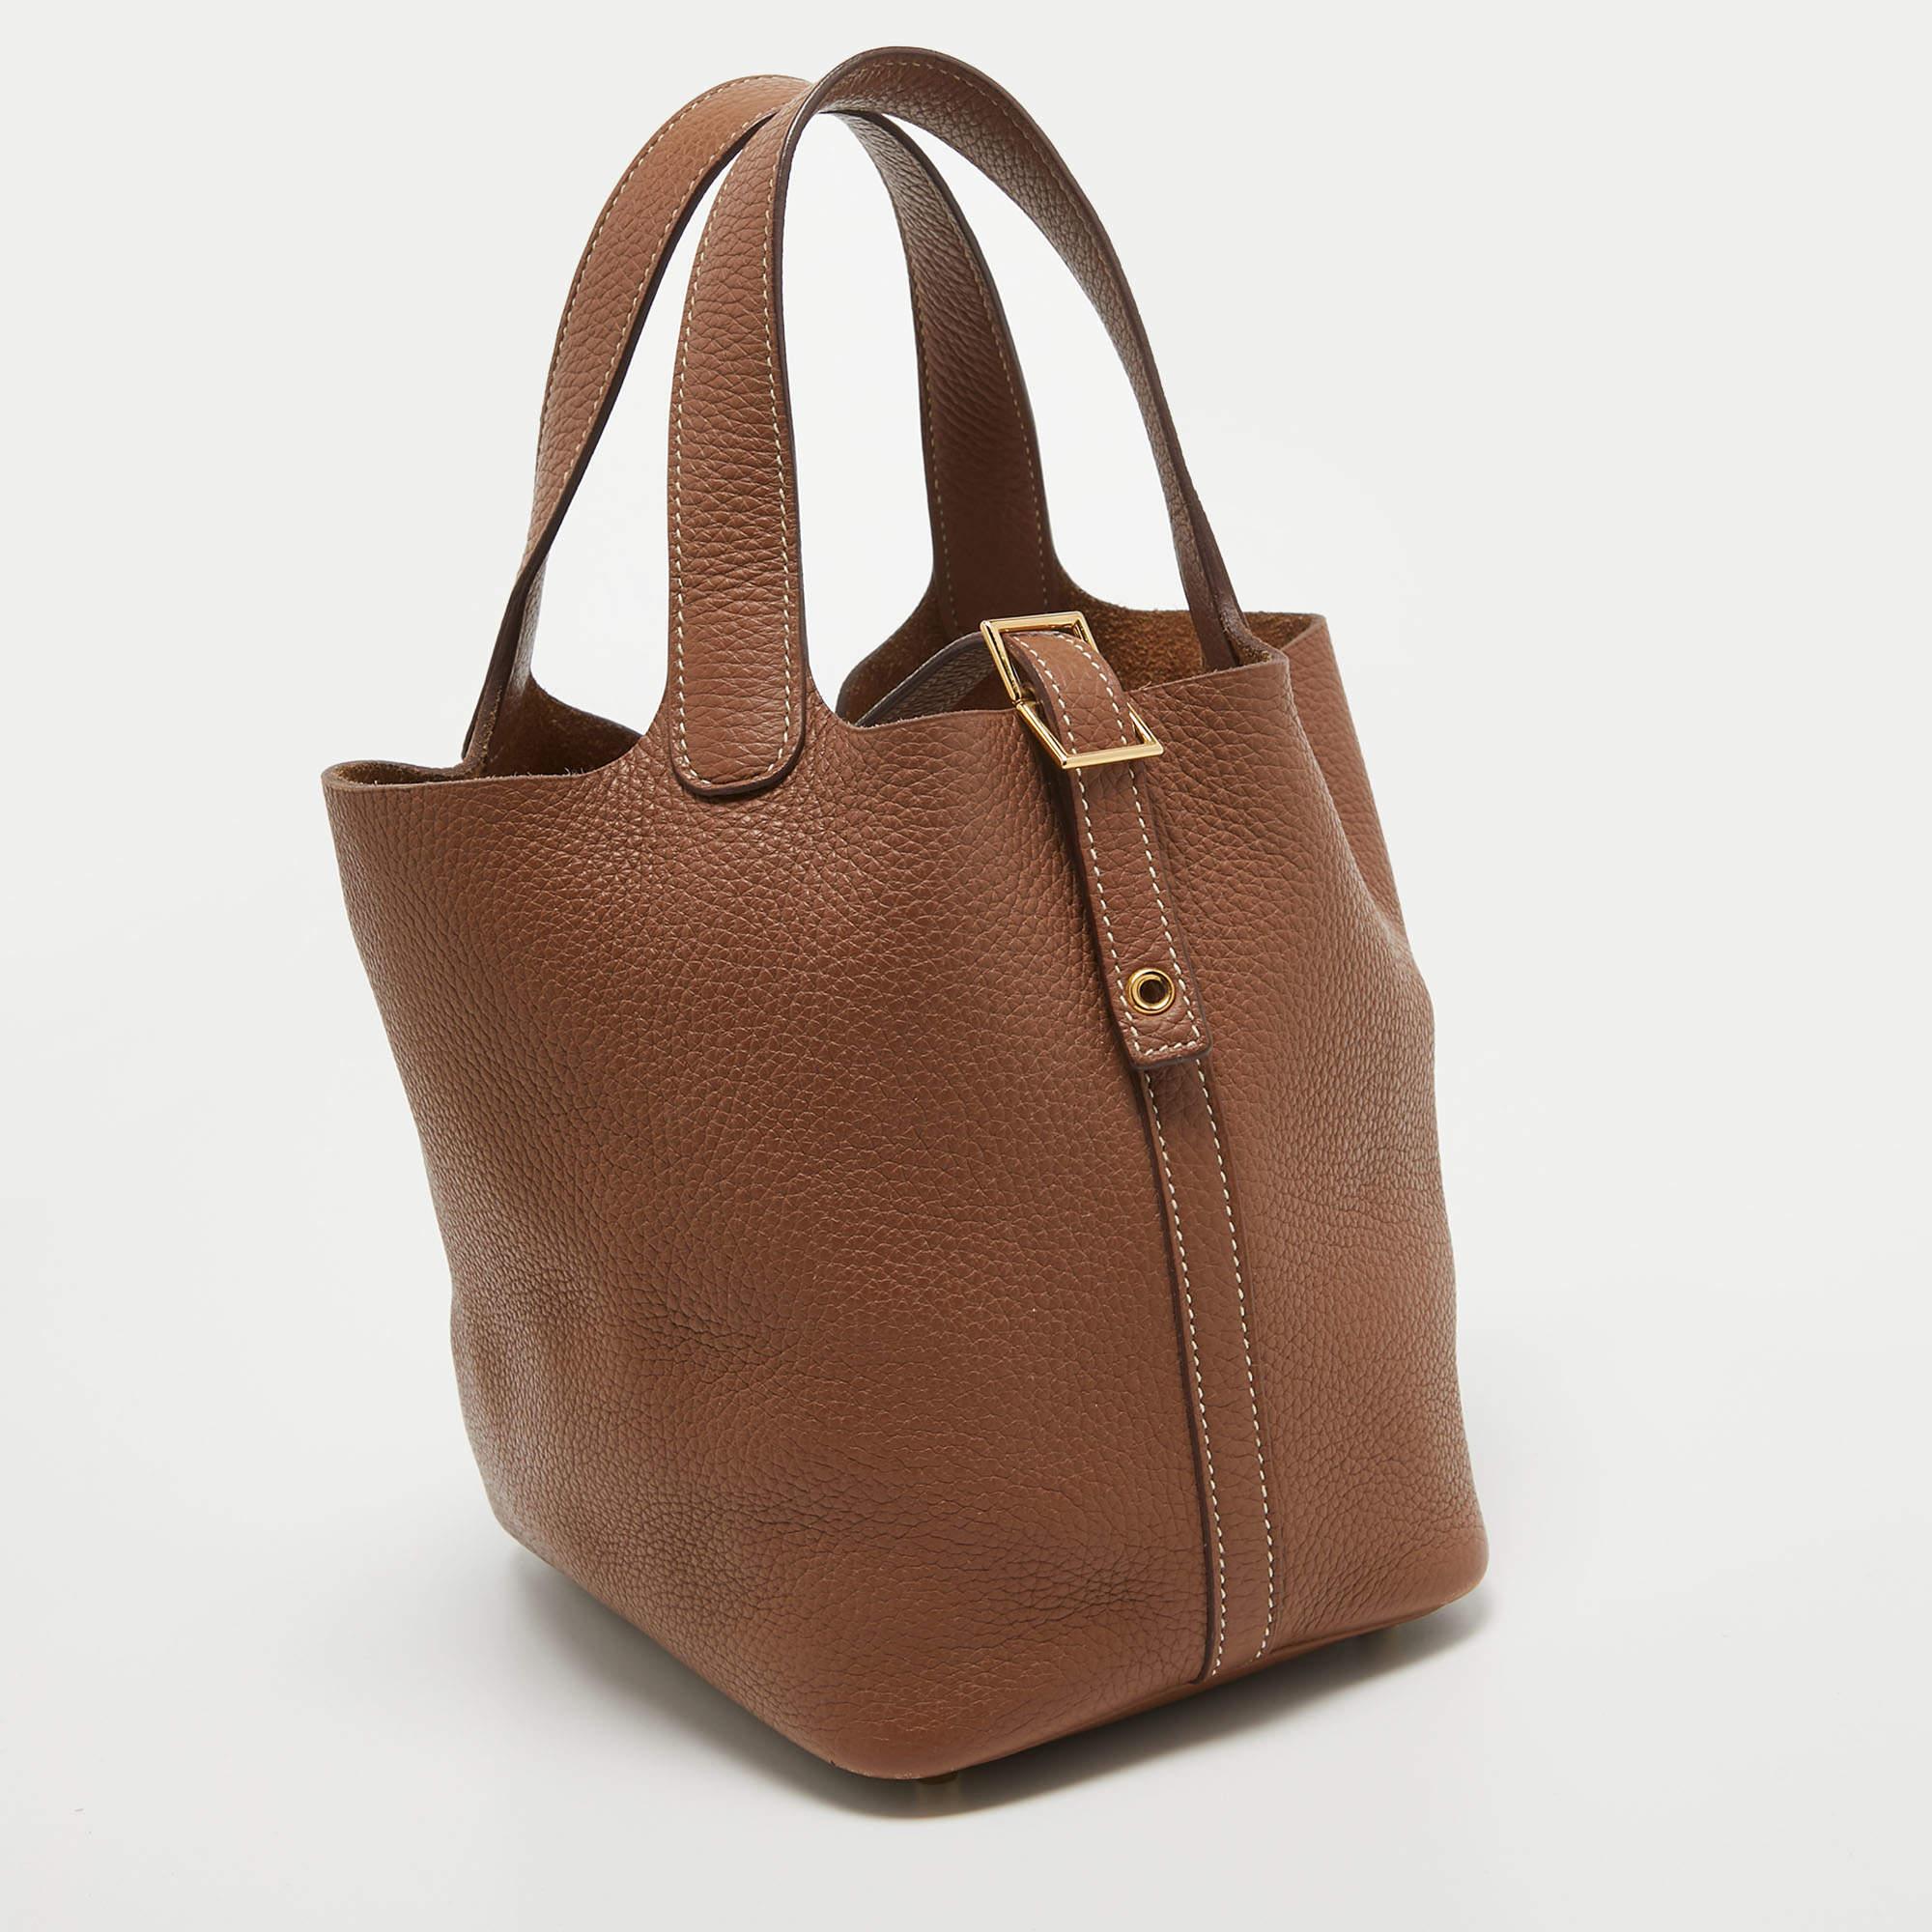 Ce sac Hermès Picotin Lock 18 est un exemple des créations raffinées de la marque qui sont habilement fabriquées pour projeter un charme classique. Il s'agit d'une création fonctionnelle avec un attrait particulier.

